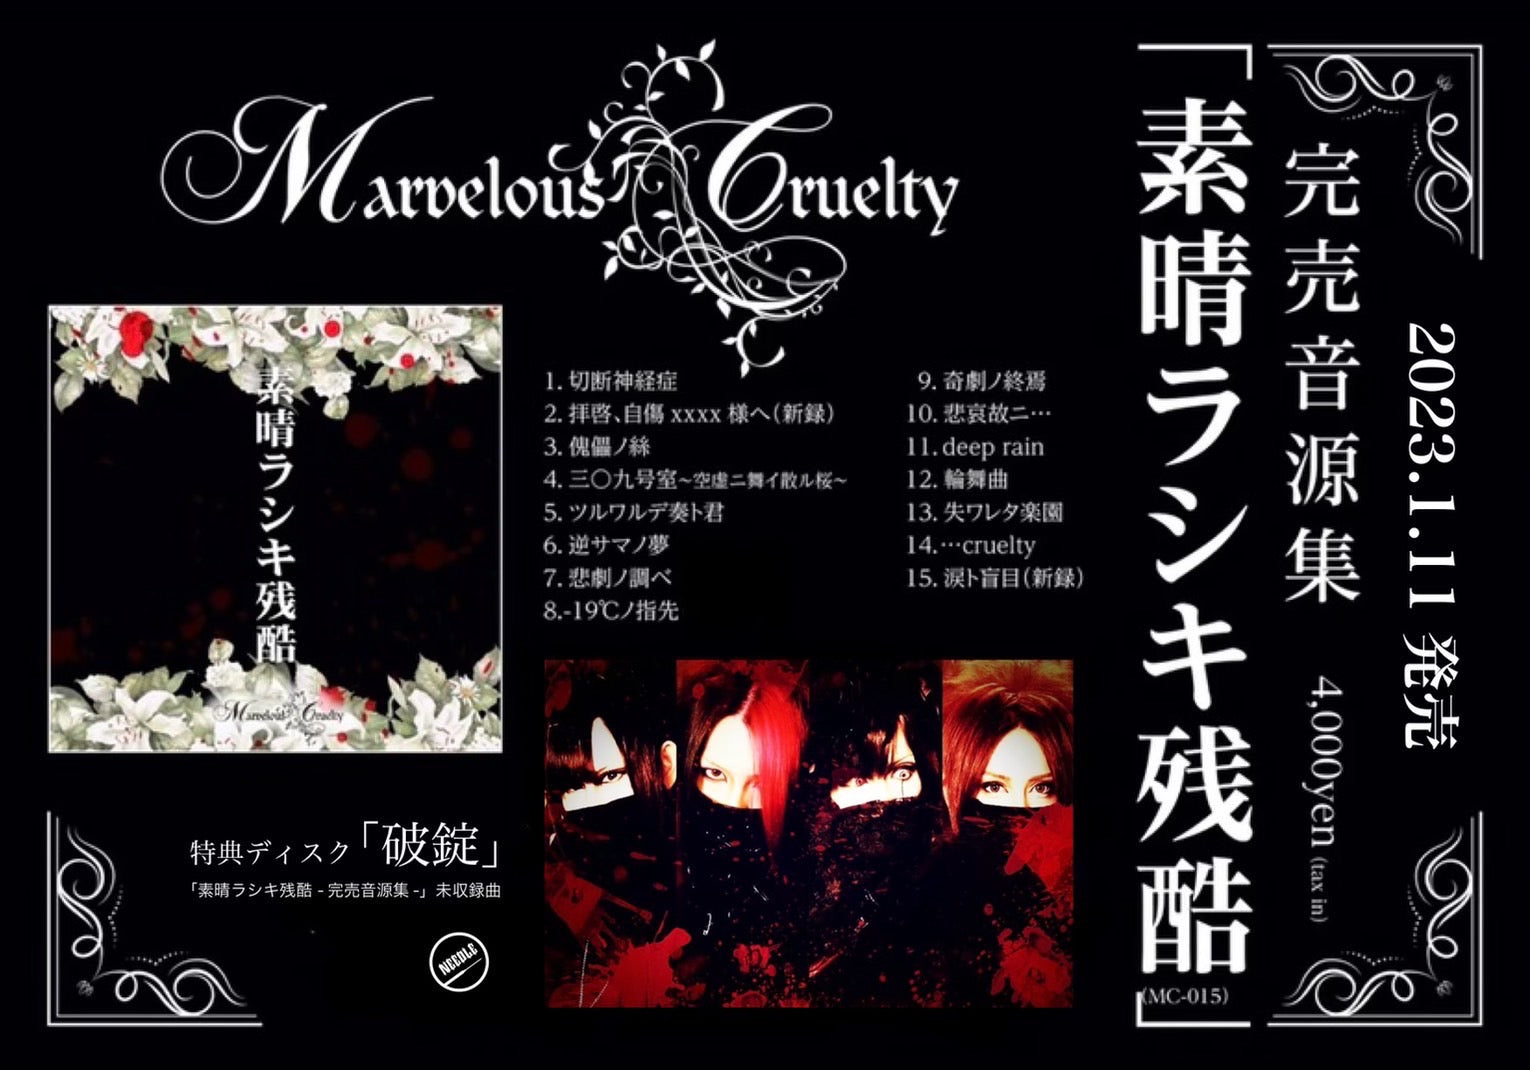 2023.01.11 Marvelous Cruelty/ 完売音源集「素晴ラシキ残酷」